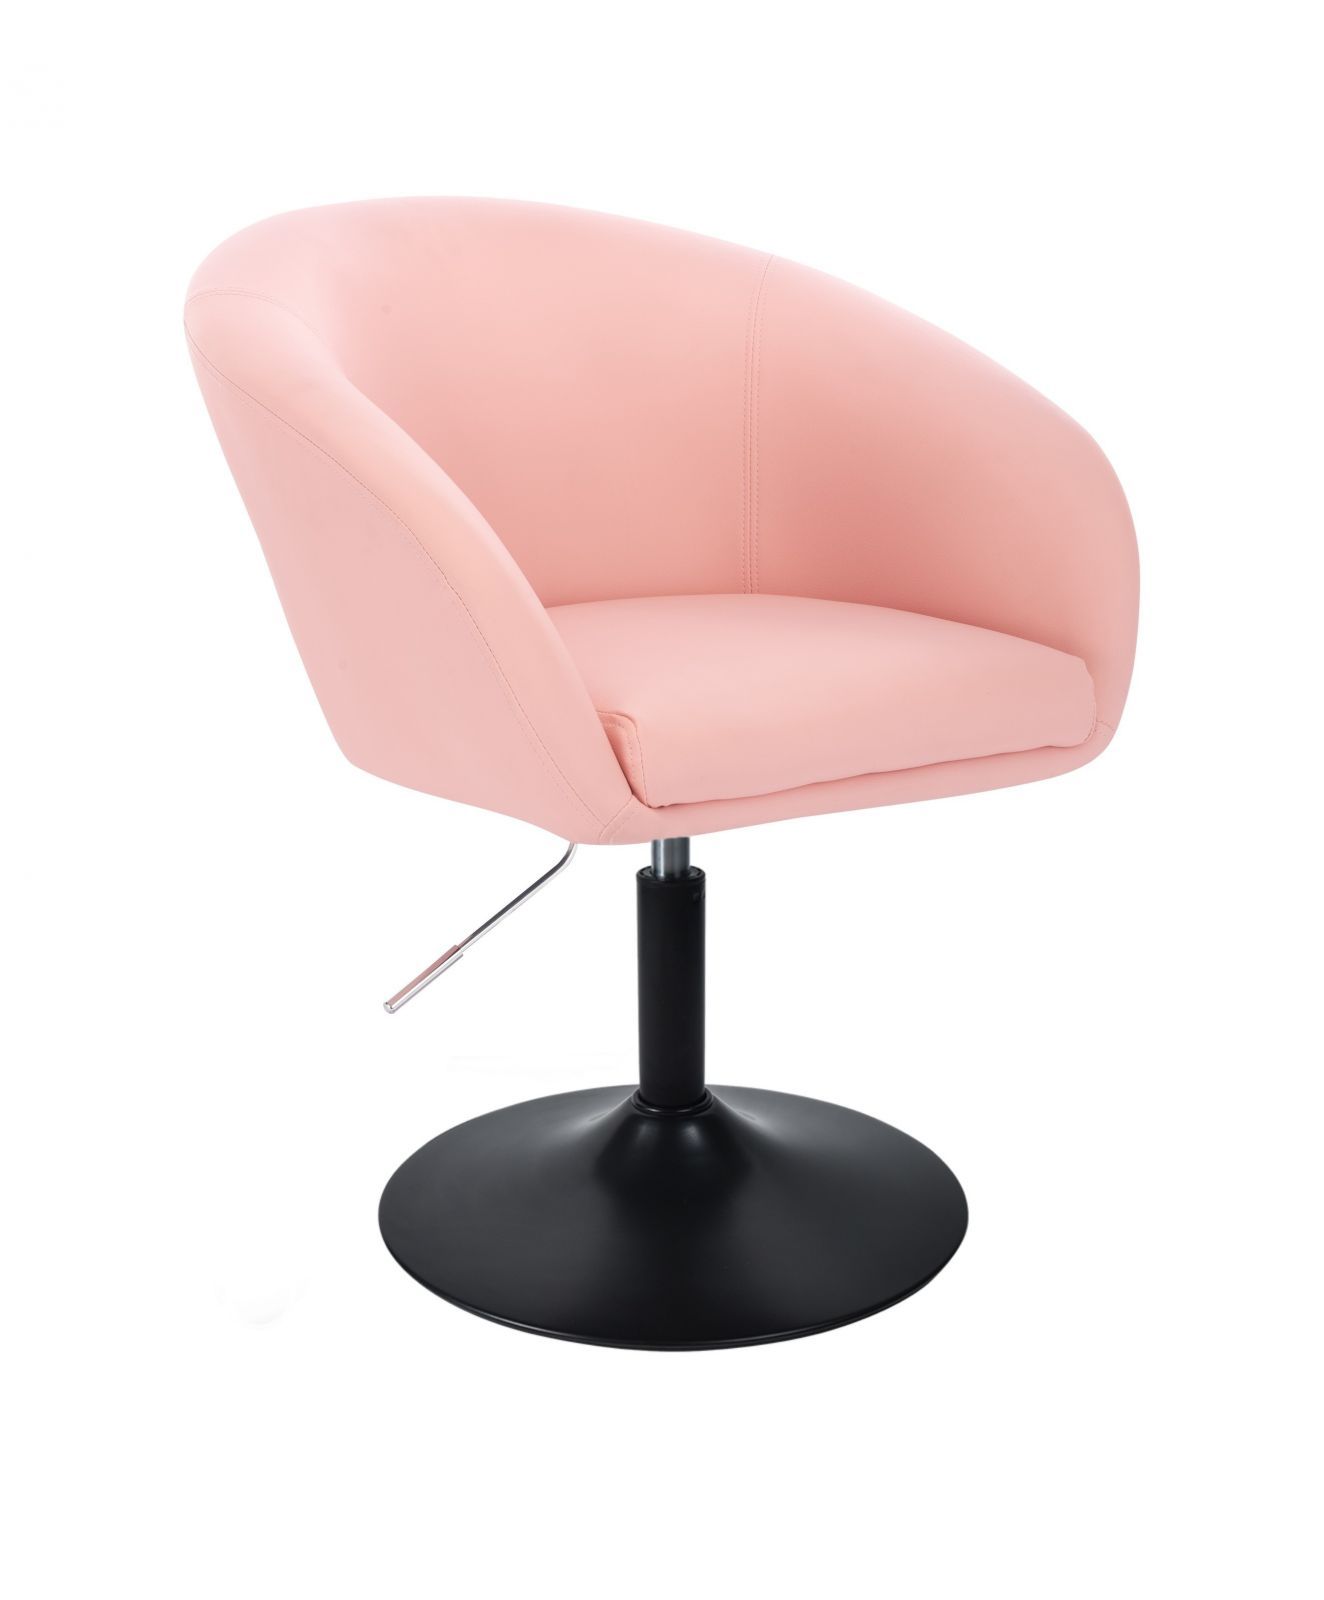 Kosmetická židle VENICE na černém talíři - růžová